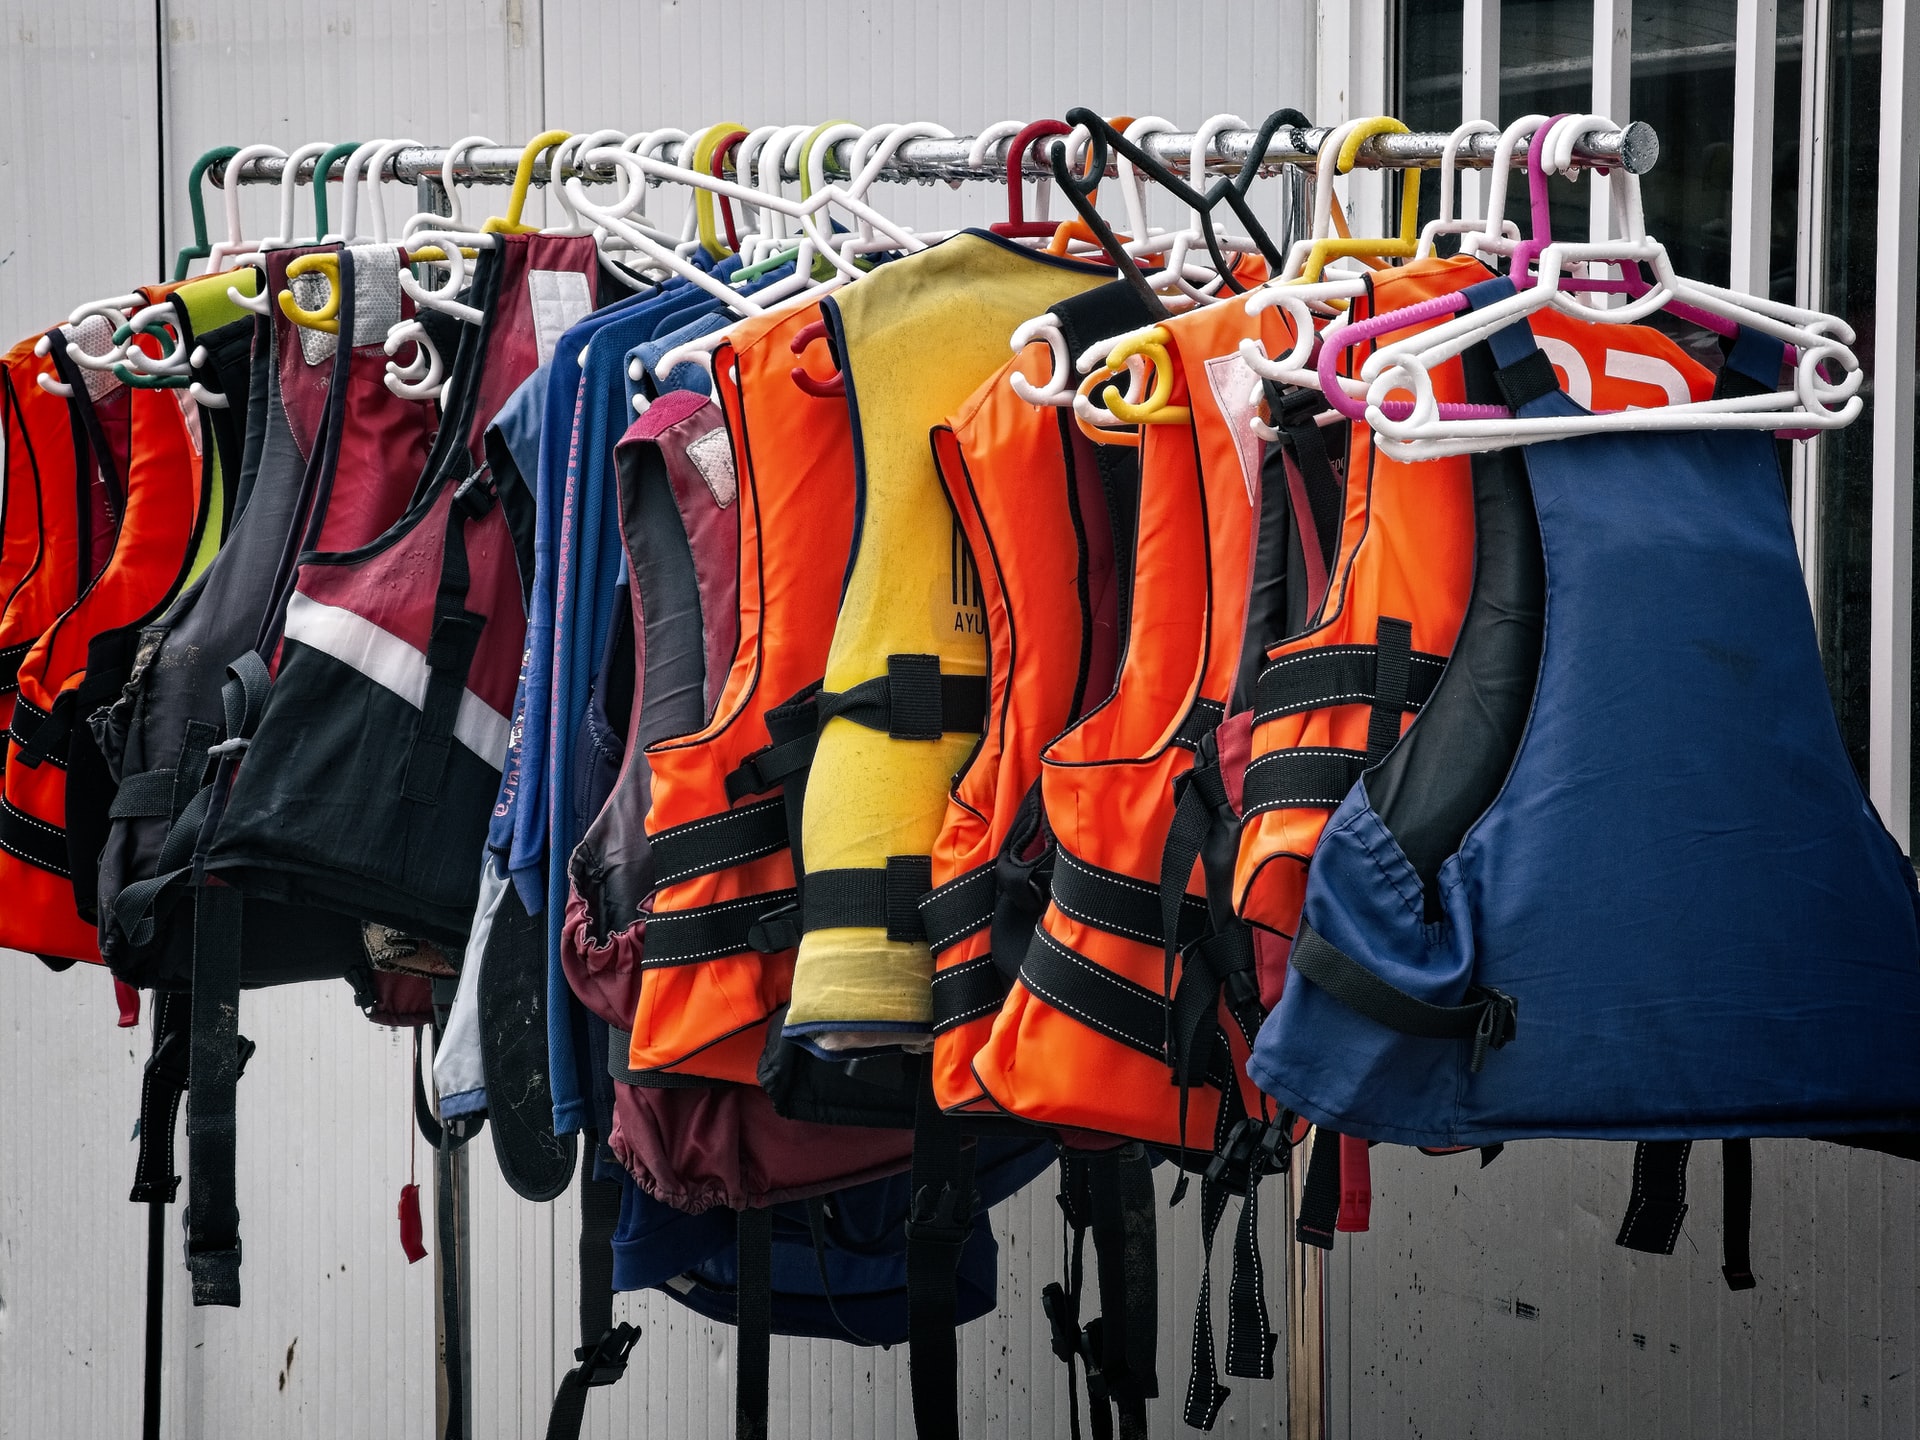 Row of life jackets